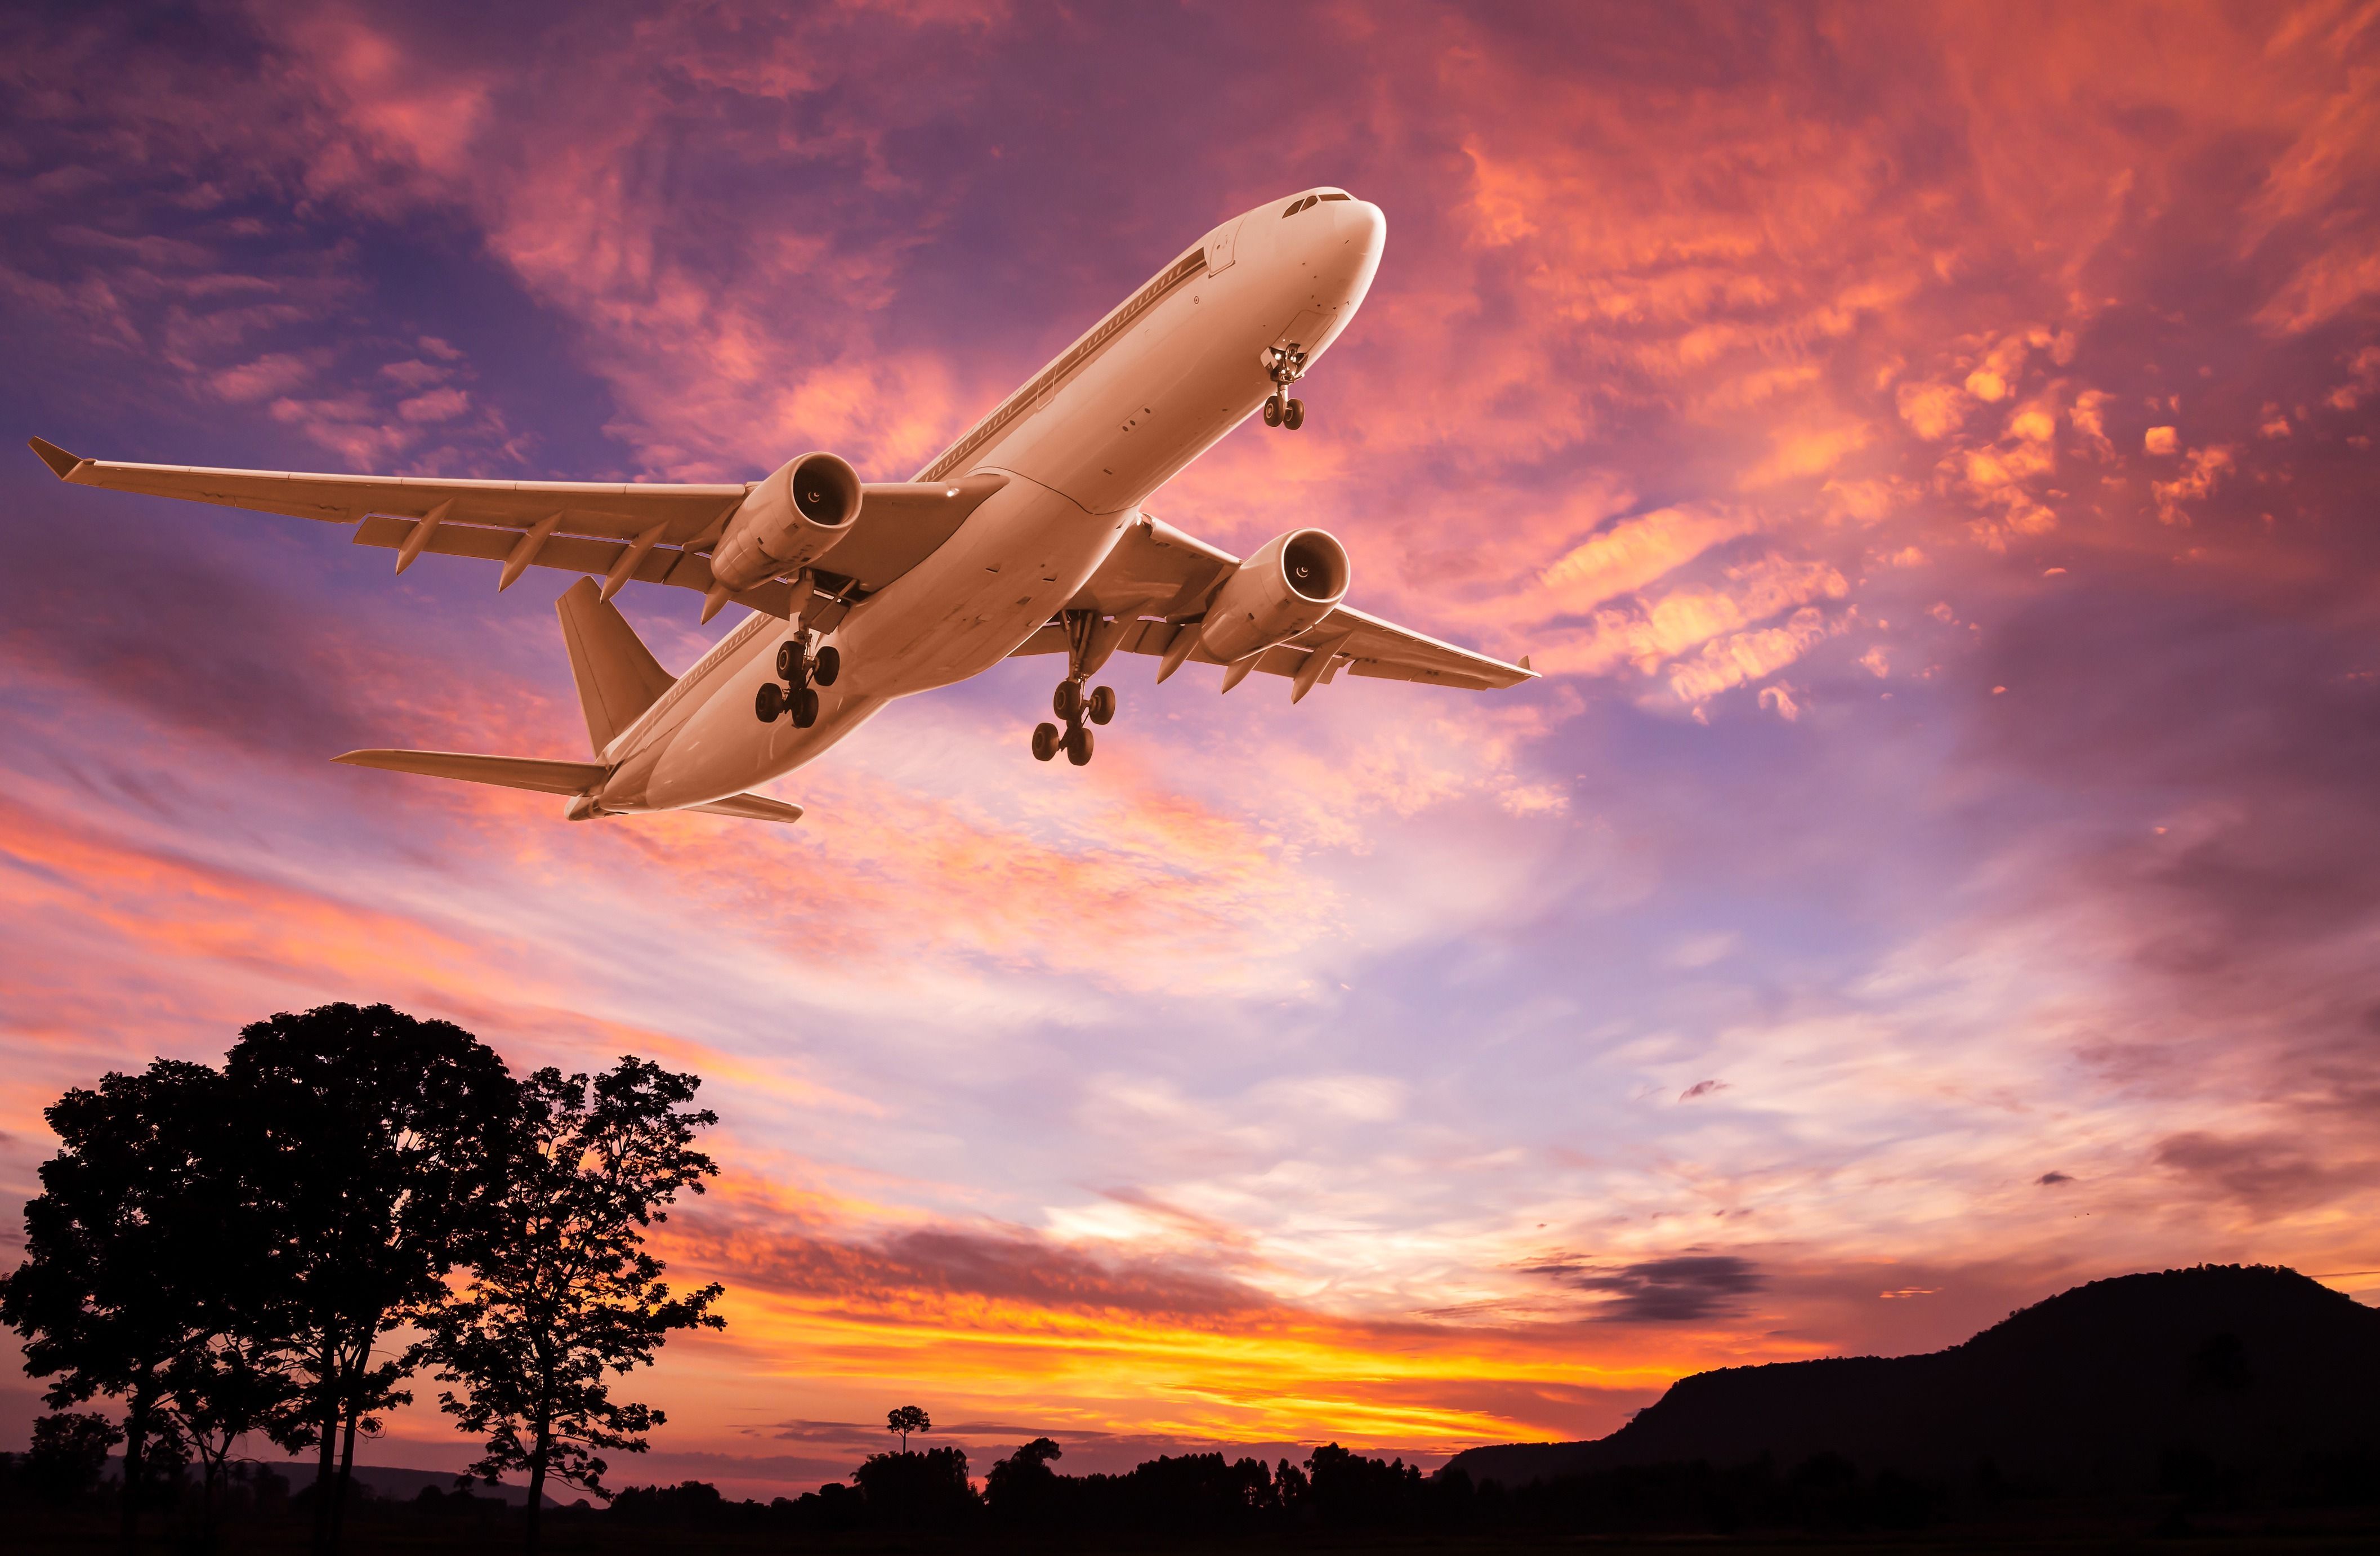 Airplane Sunset Wallpaper. Papel de parede de avião, Férias dos sonhos, Ferias